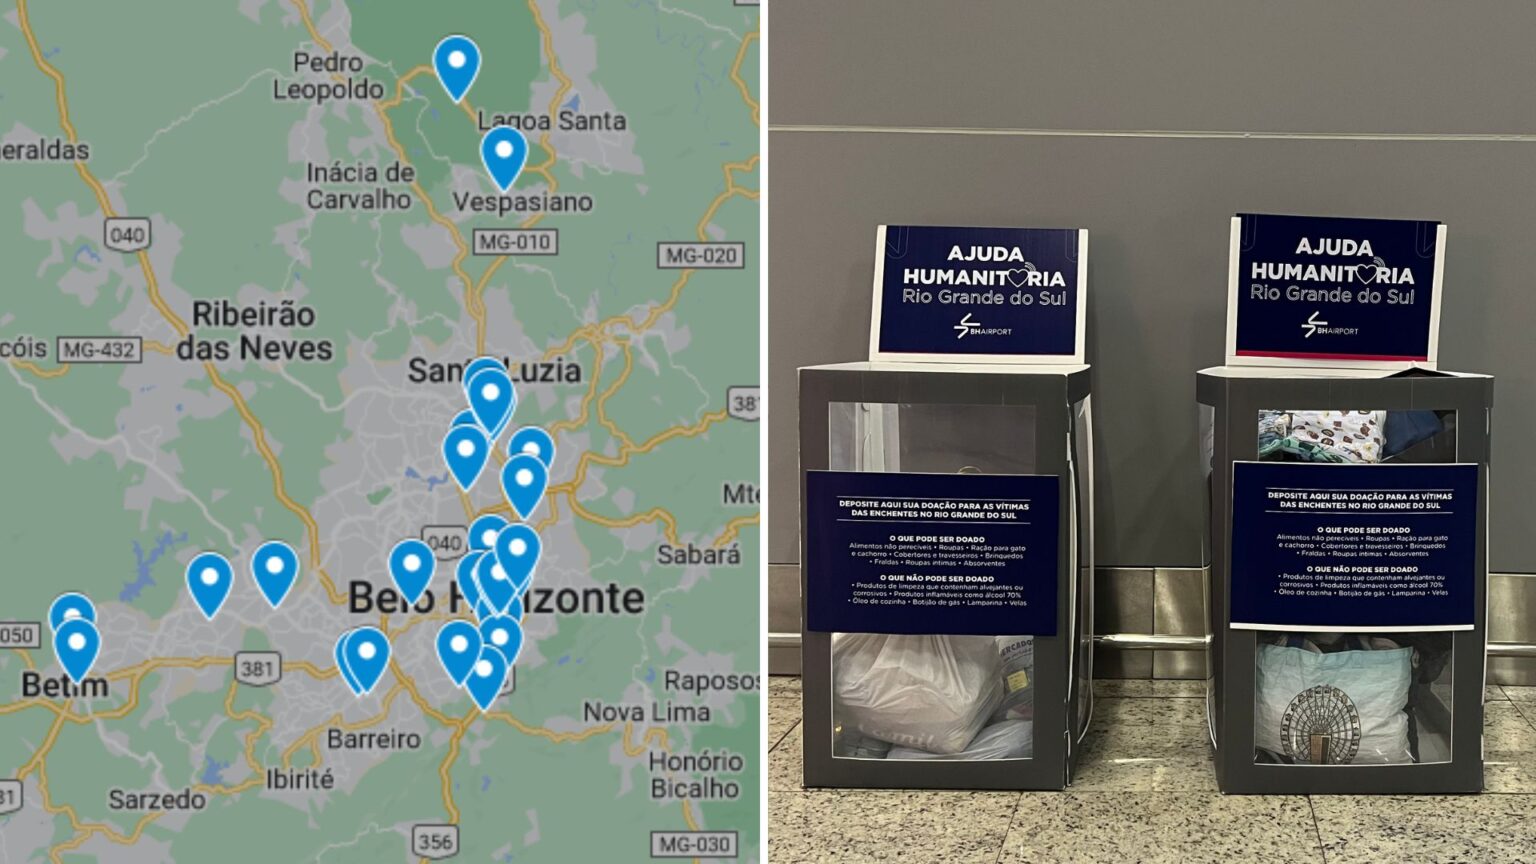 Confira mapa de onde doar em BH para ajudar as vítimas das chuvas no RS - Foto: Por Dentro de Minas + BH Airport